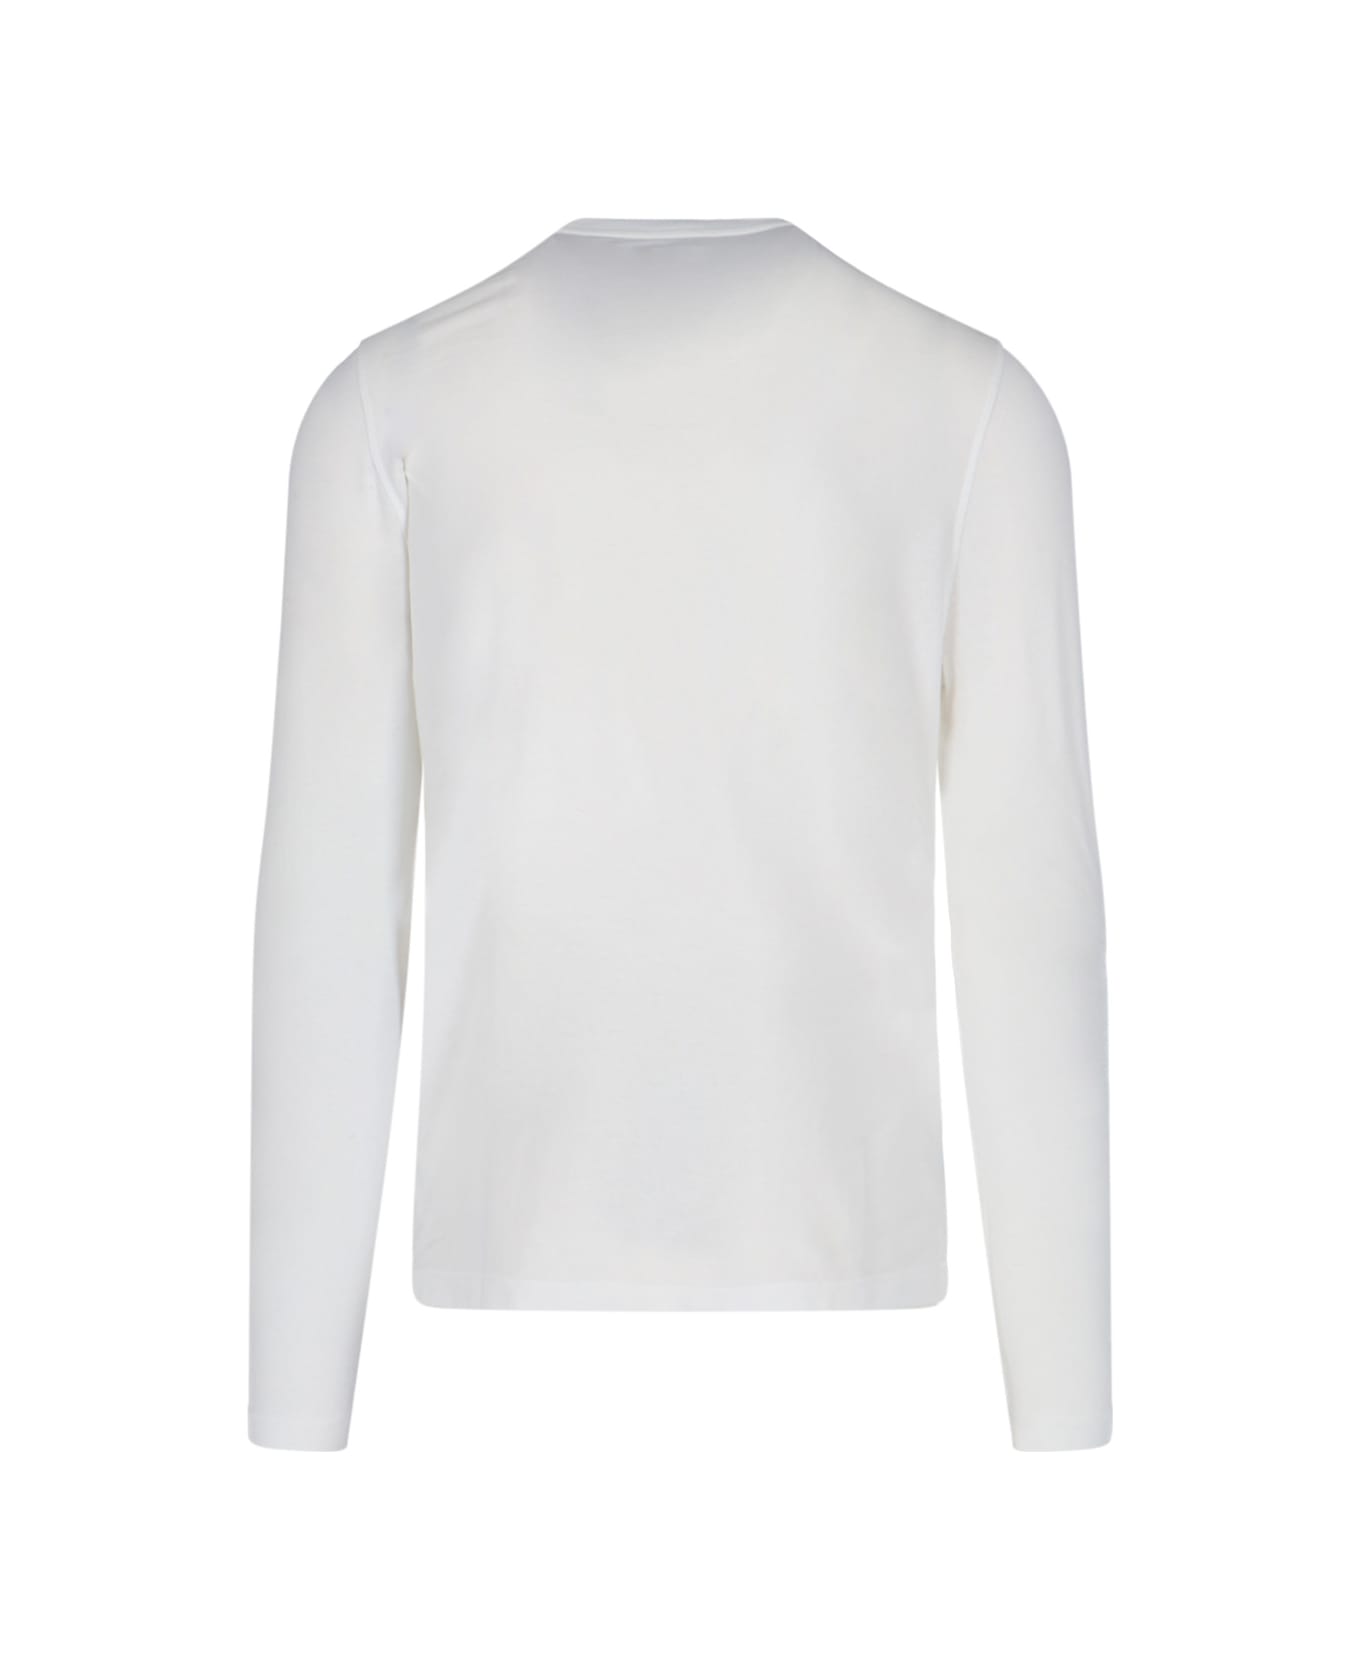 Zanone Basic T-shirt - White シャツ